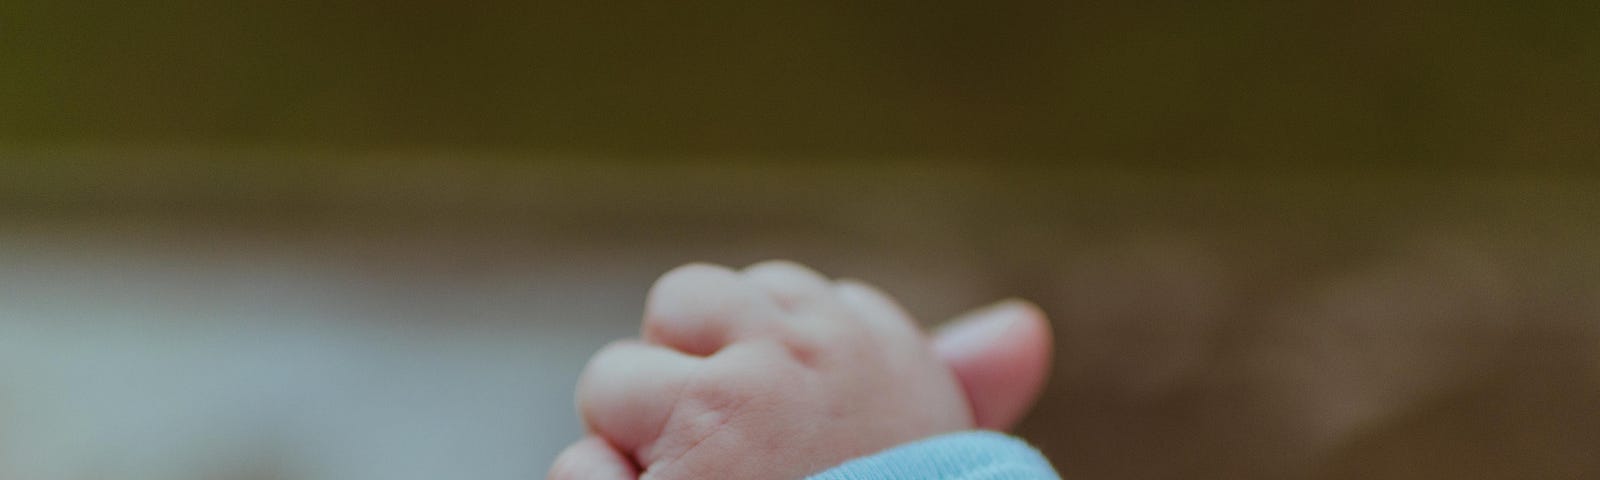 An adult hand holding a newborn’s hand